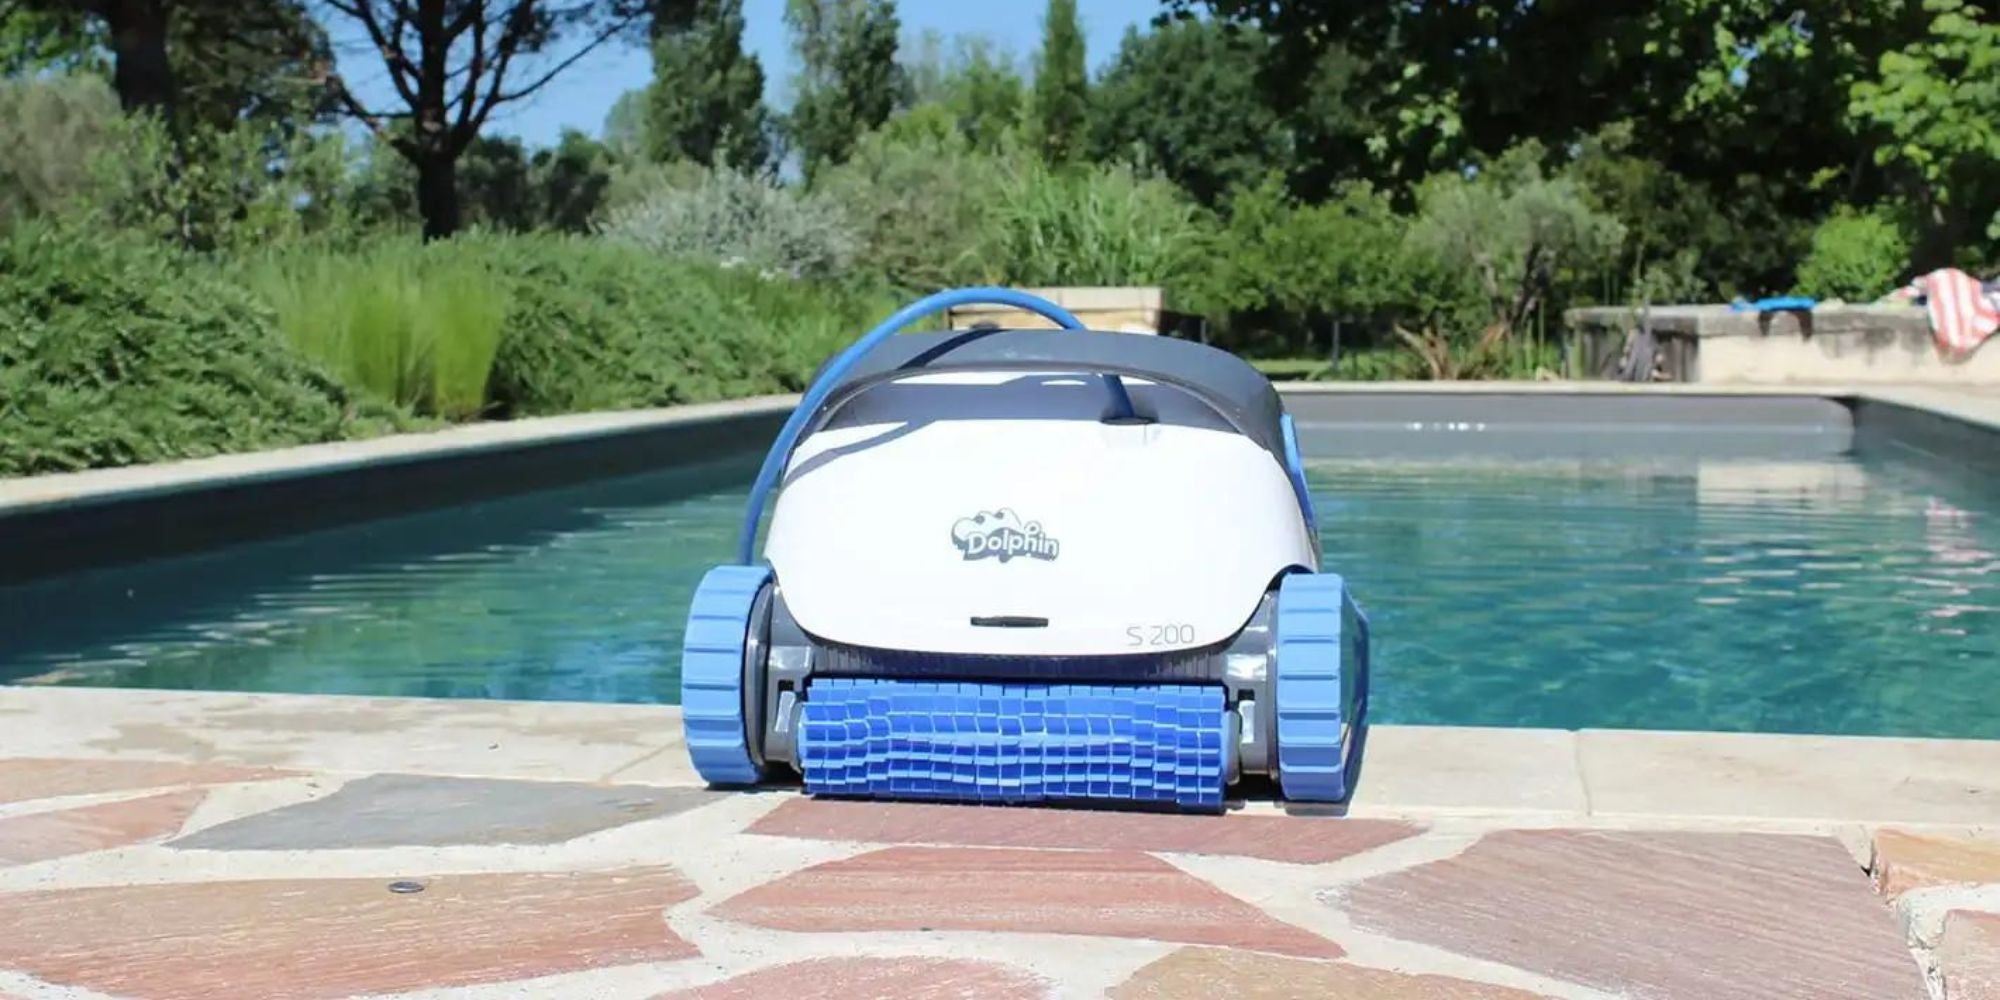 Peut-on nager lorsque le robot de piscine est en fonctionnement ?